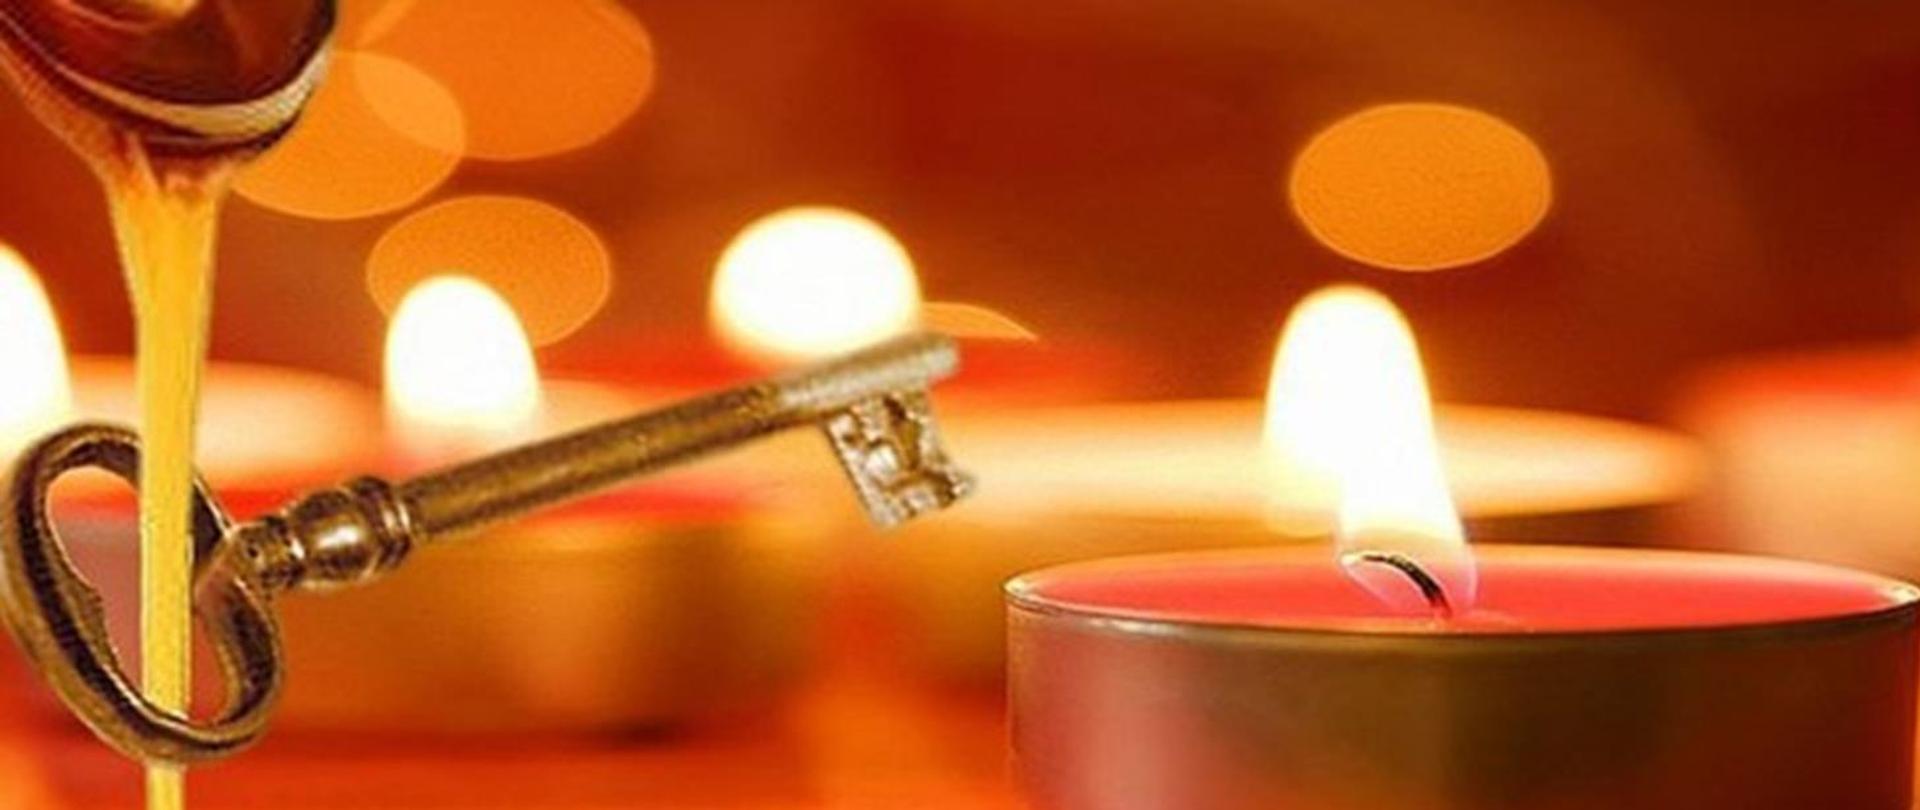 zdjęcie na czerwonym tle przedstawiające z lewej strony lejący się wosk przez dziurkę od klucza, z prawej strony płonącą świecę, w tle płomyki świec